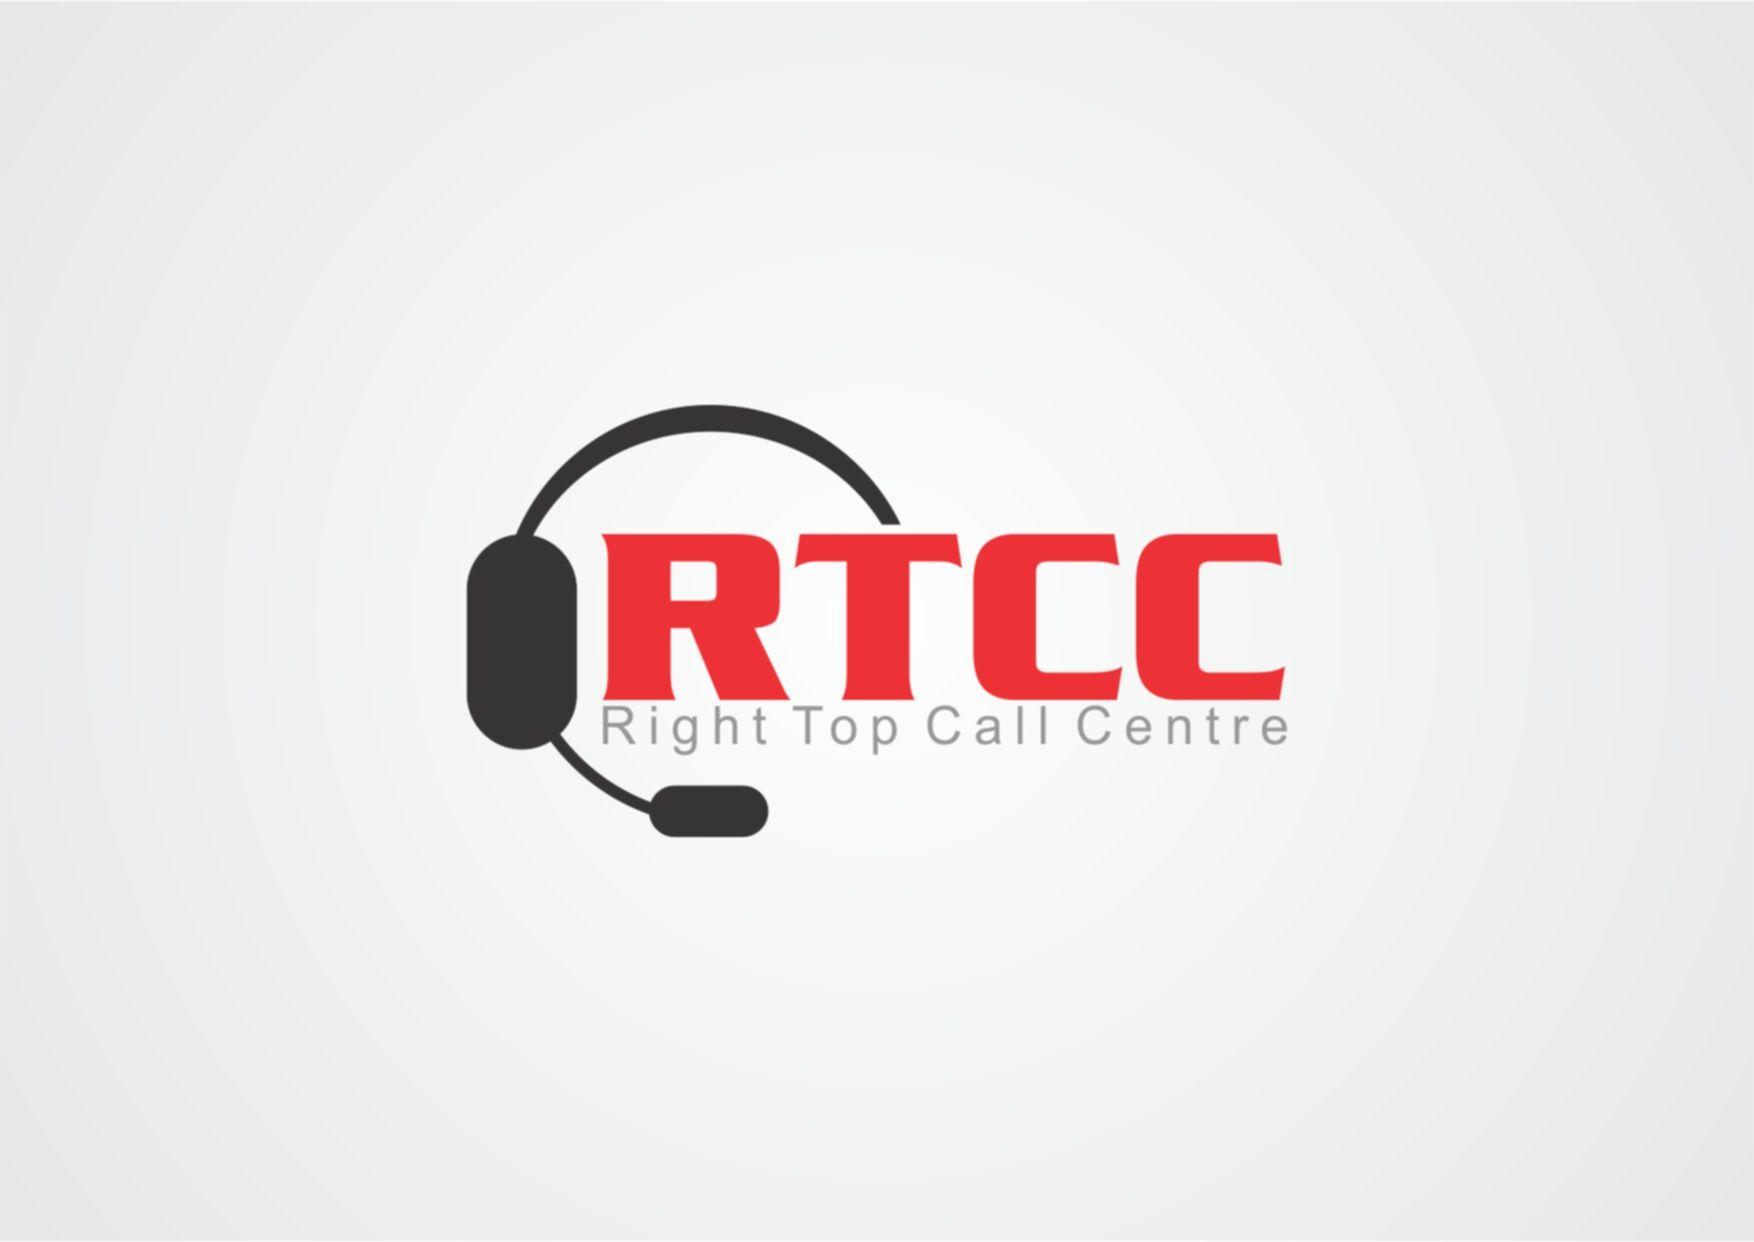 Call Center Logo - Call Center: Call Center Logo